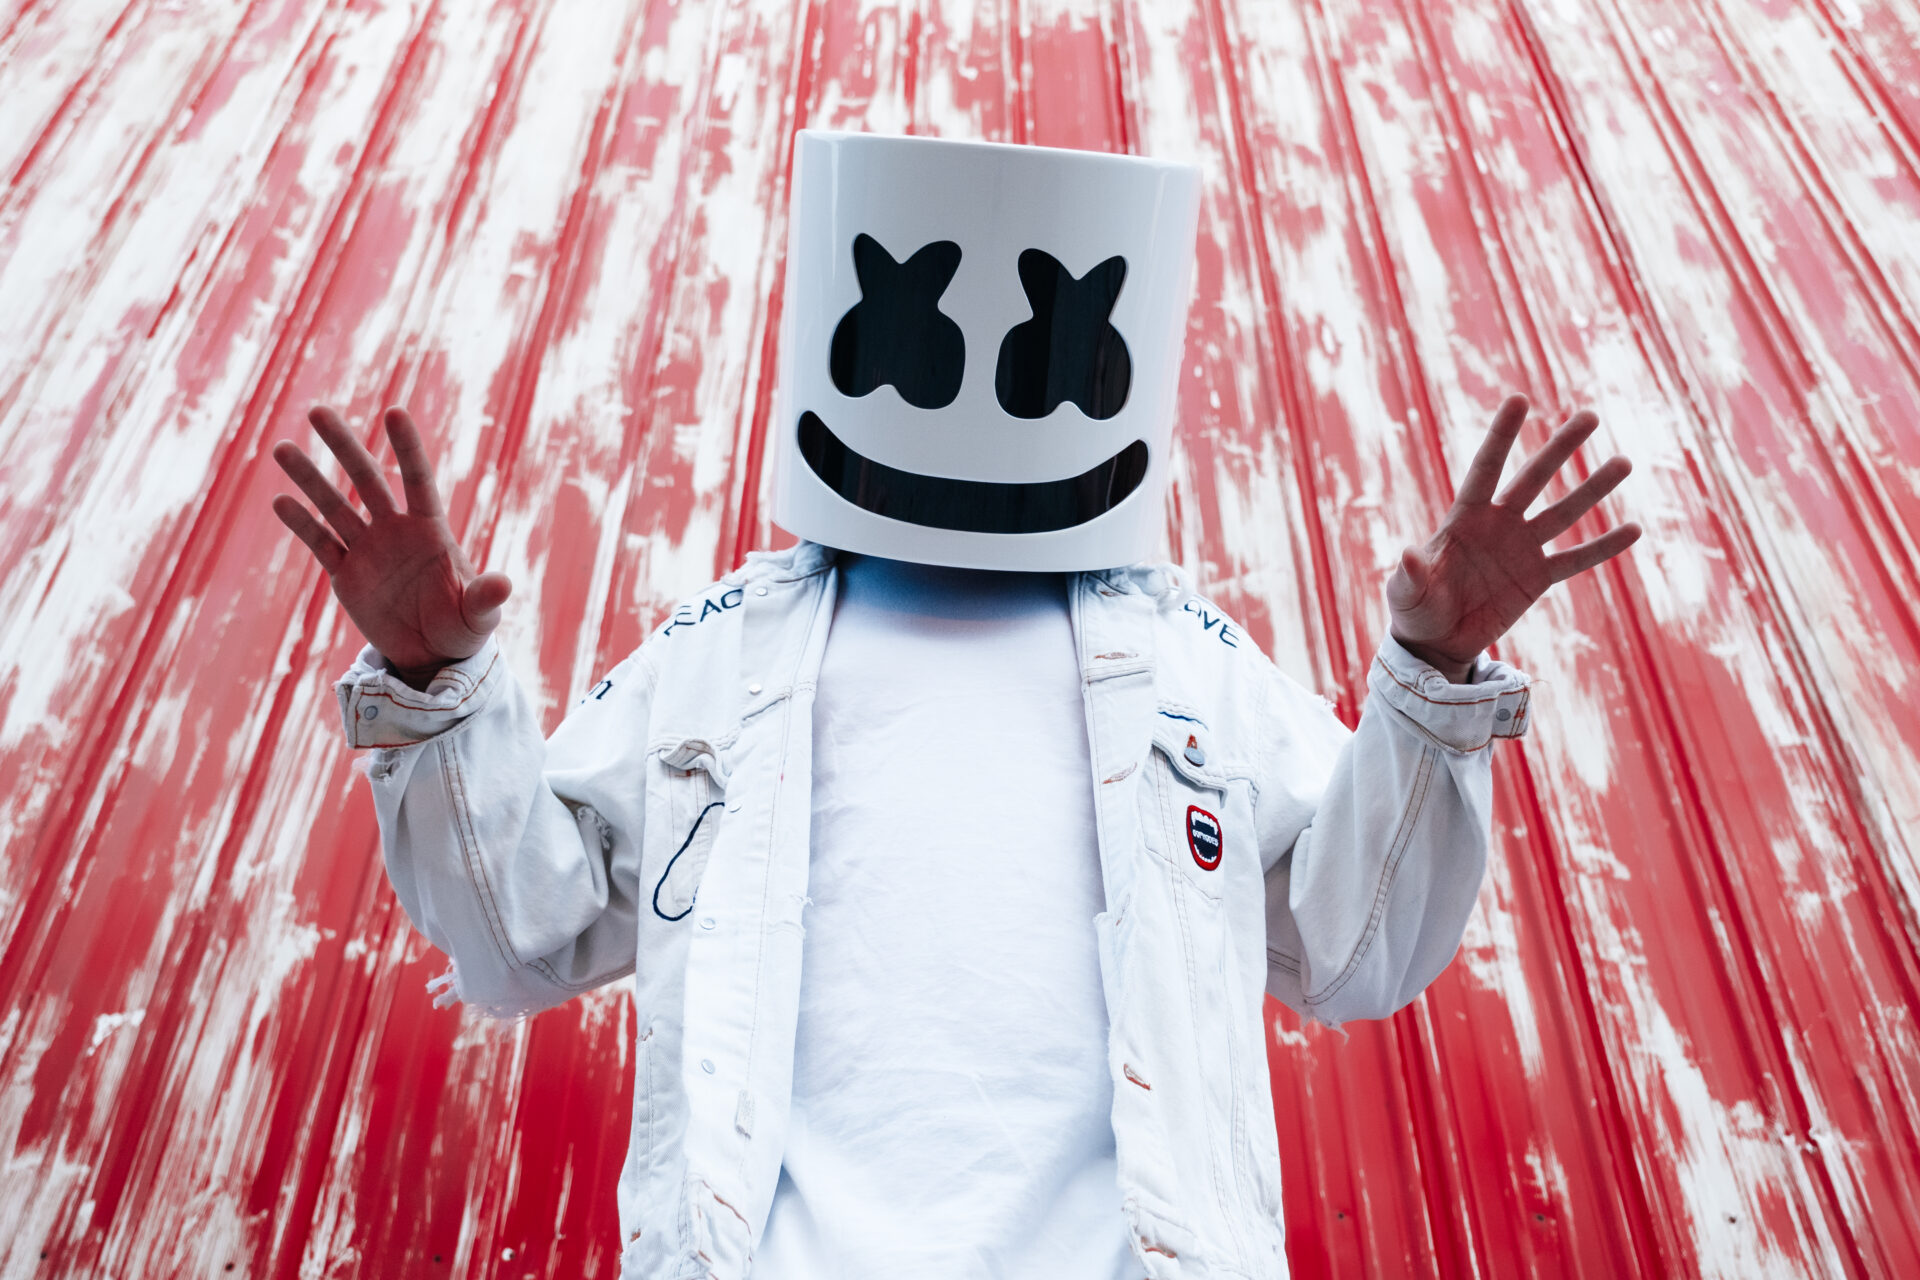 “Check This Out”: Marshmello returns with new album ‘Joytime II’